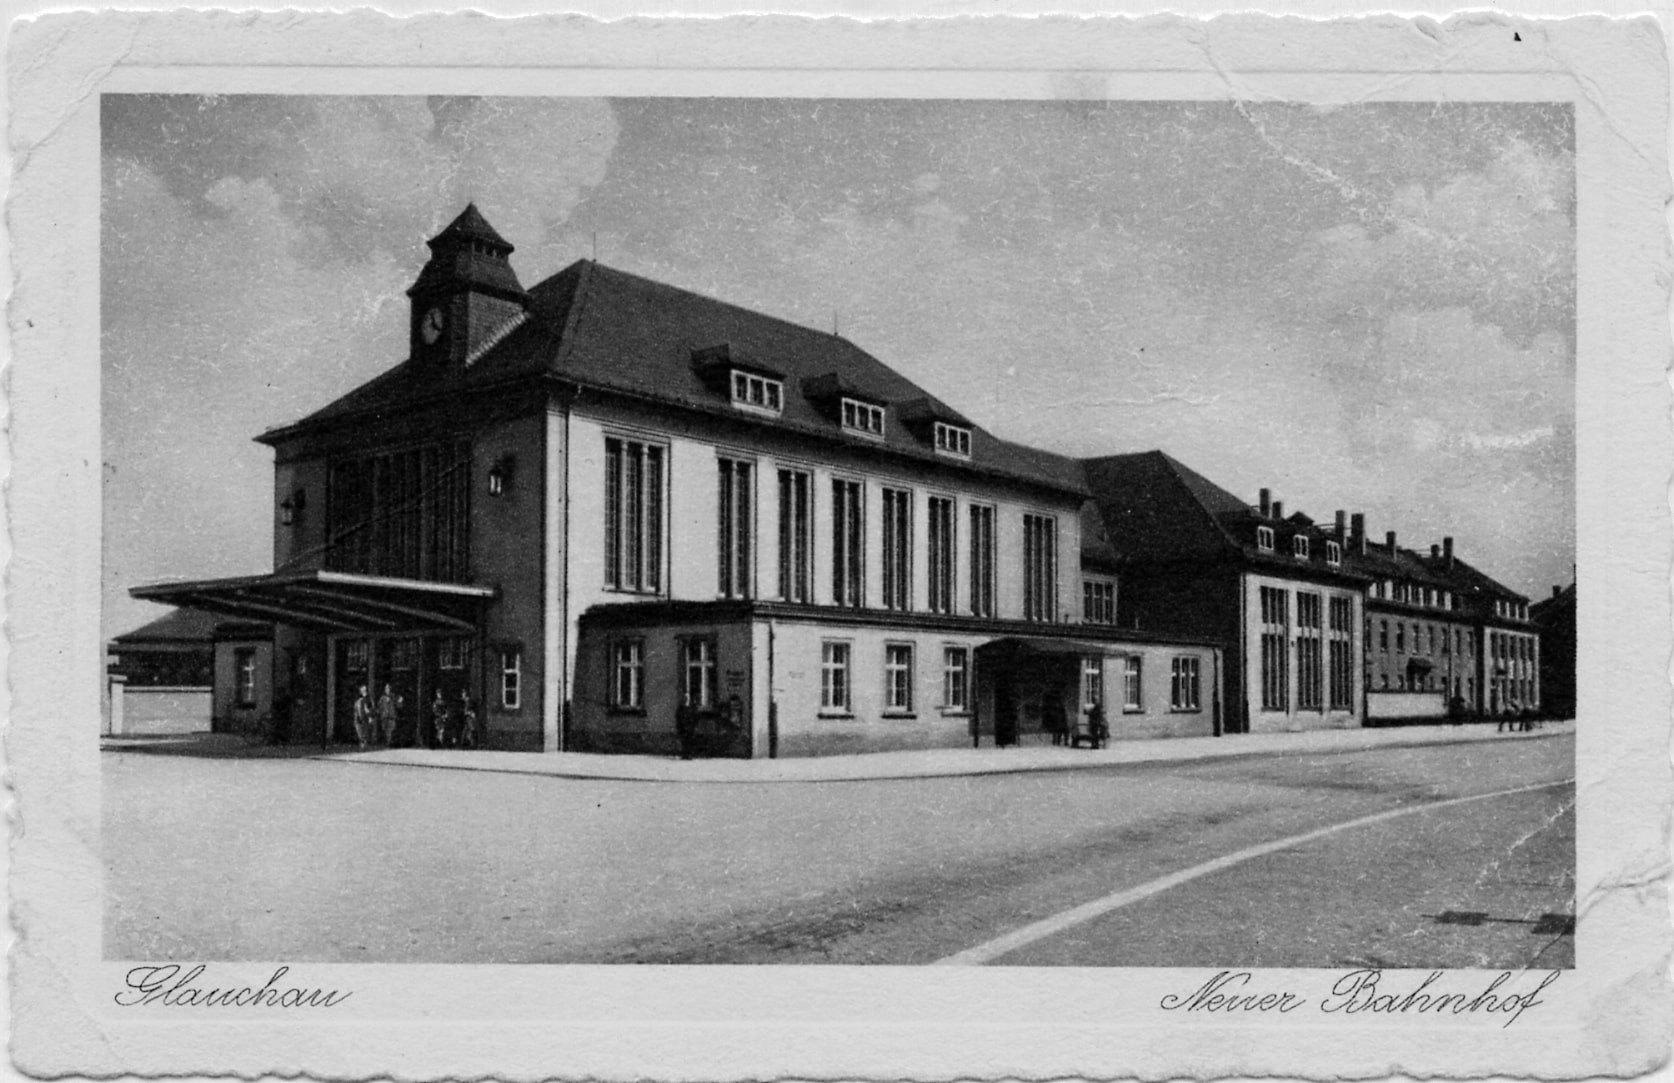 Bahnhof Glauchau